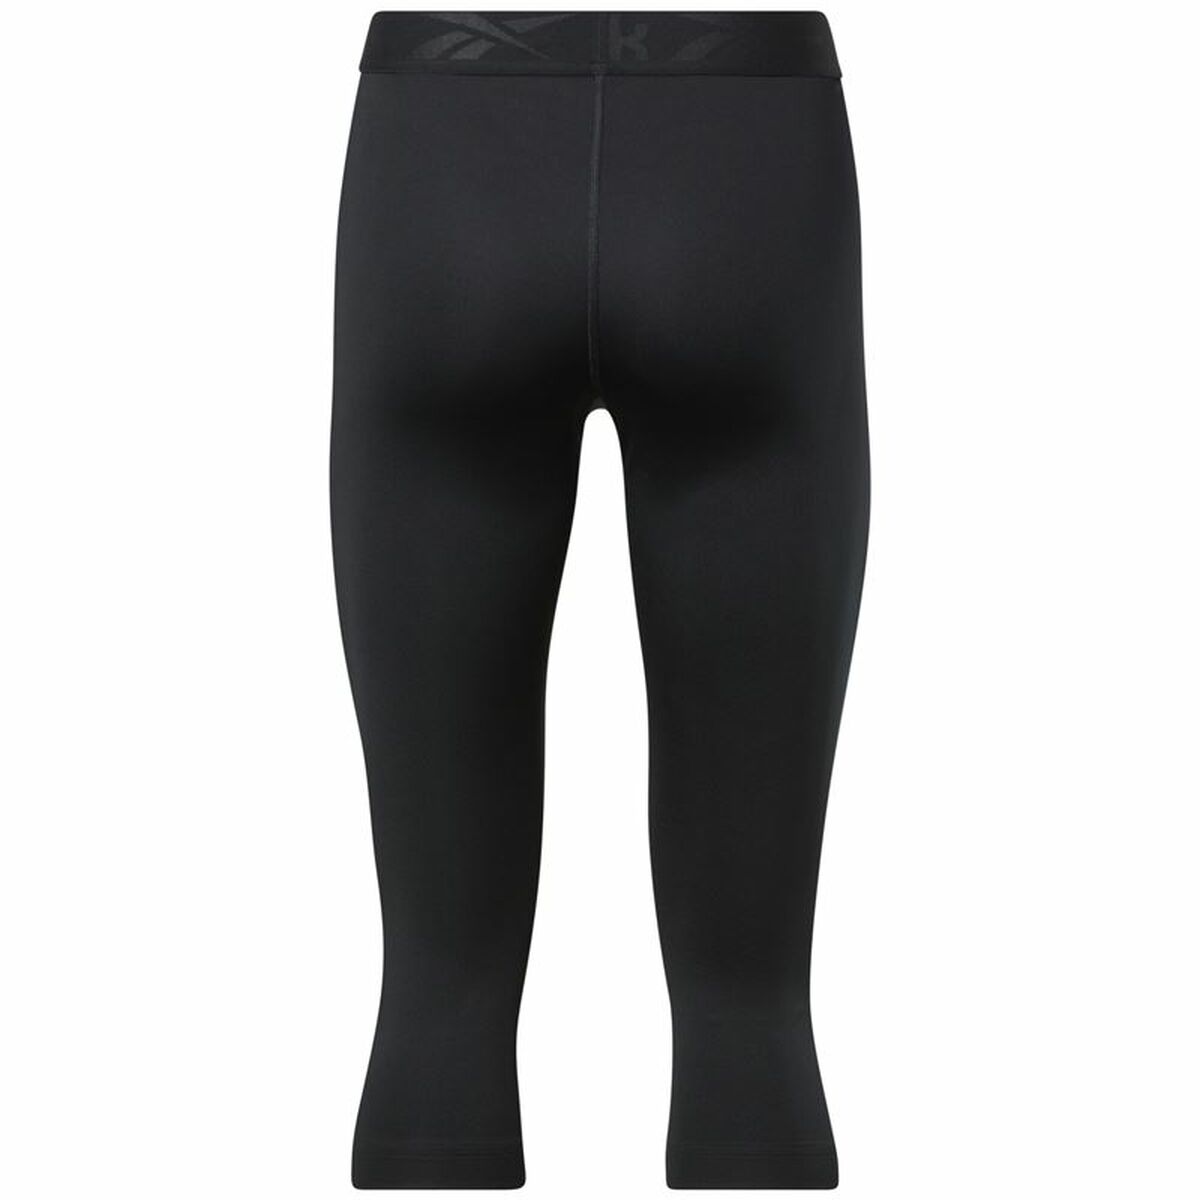 Sport leggings for Women Reebok Capri Night Black